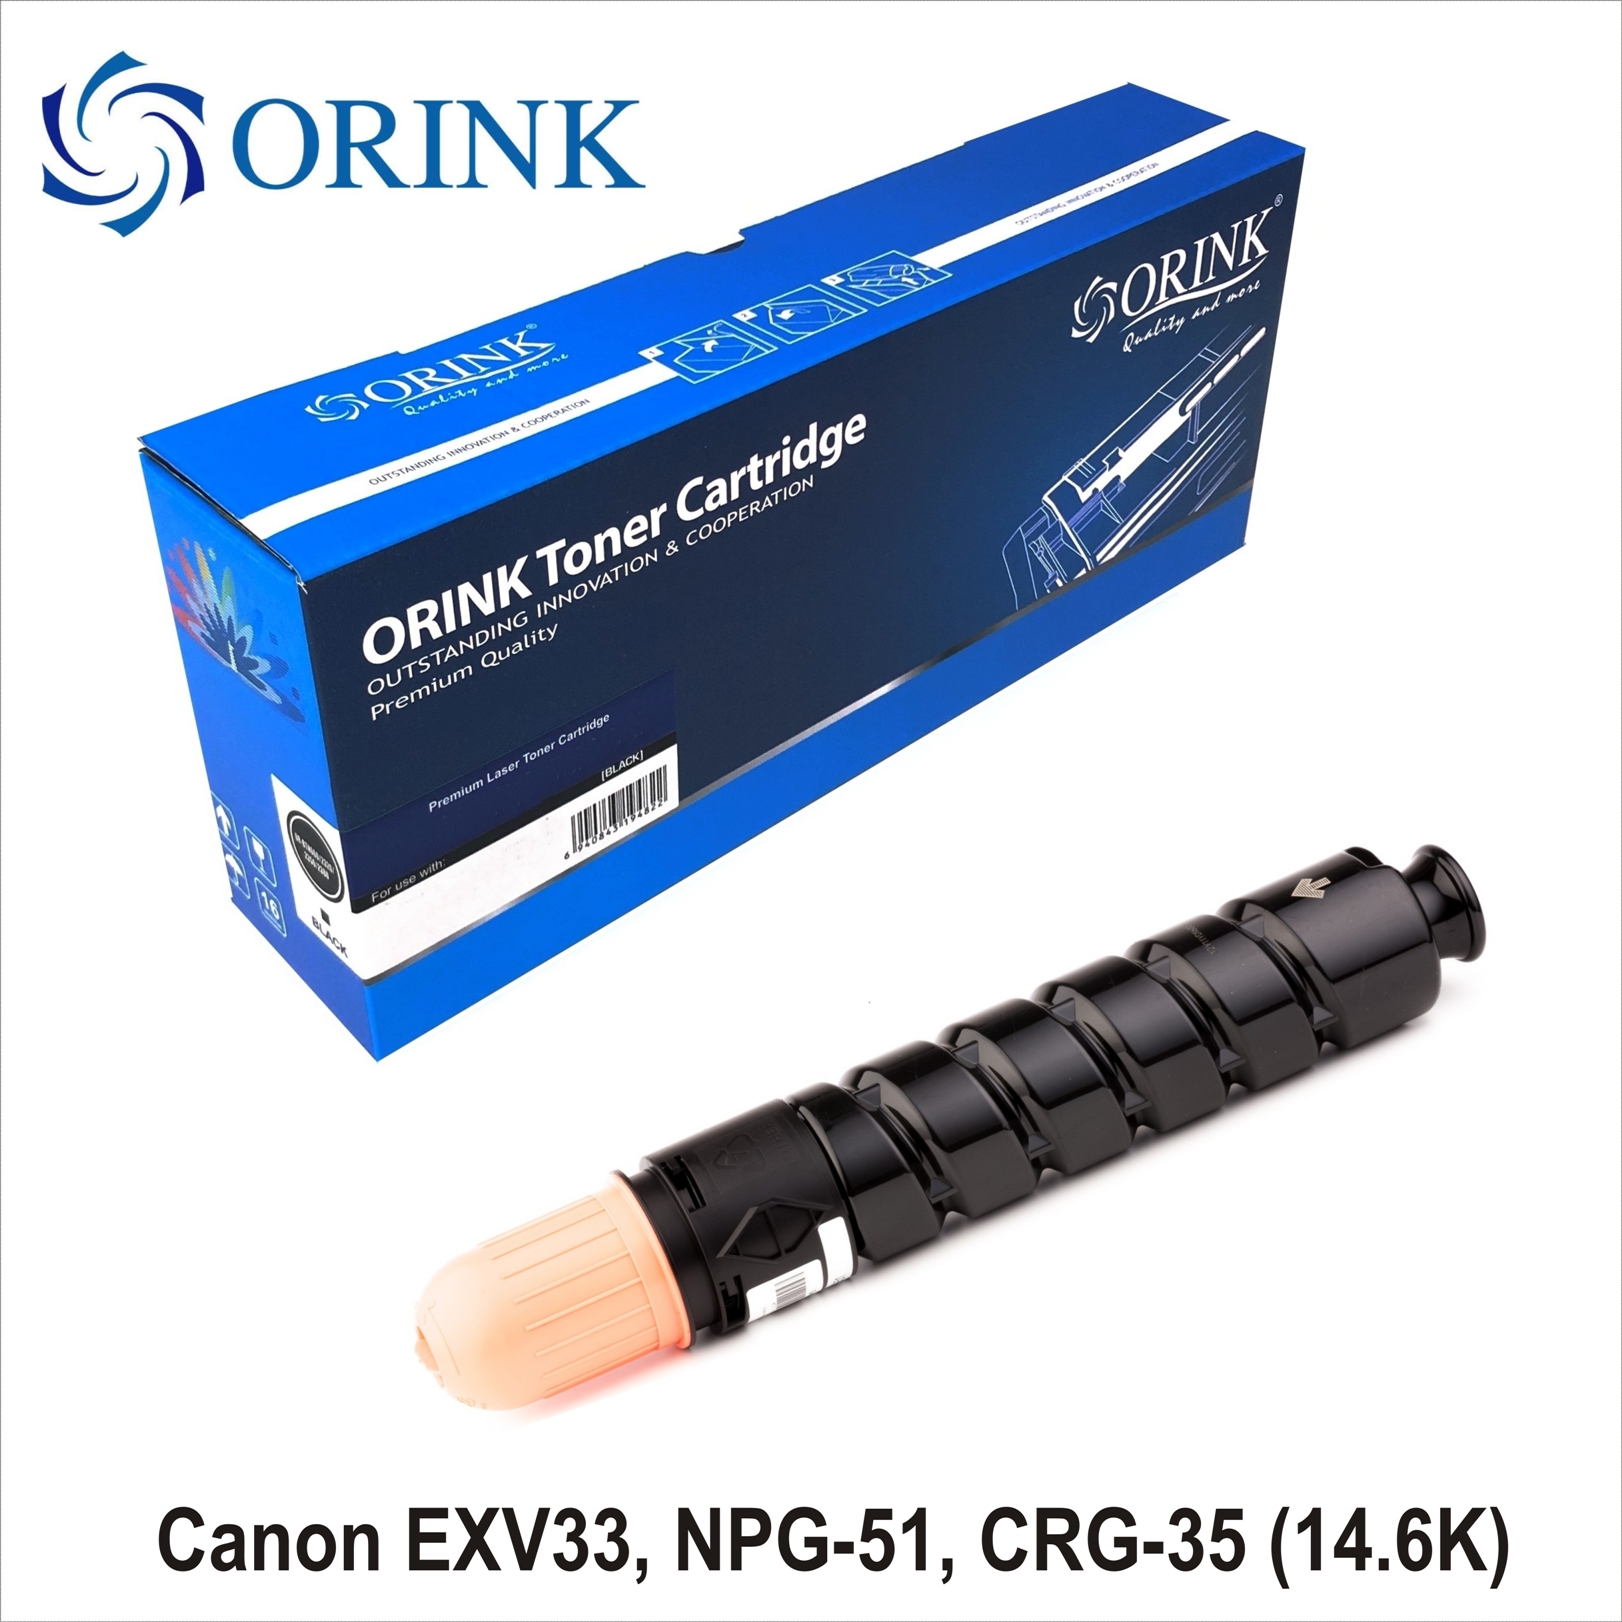 Canon EXV33, NPG-51, CRG-35 (14.6K) ORINK